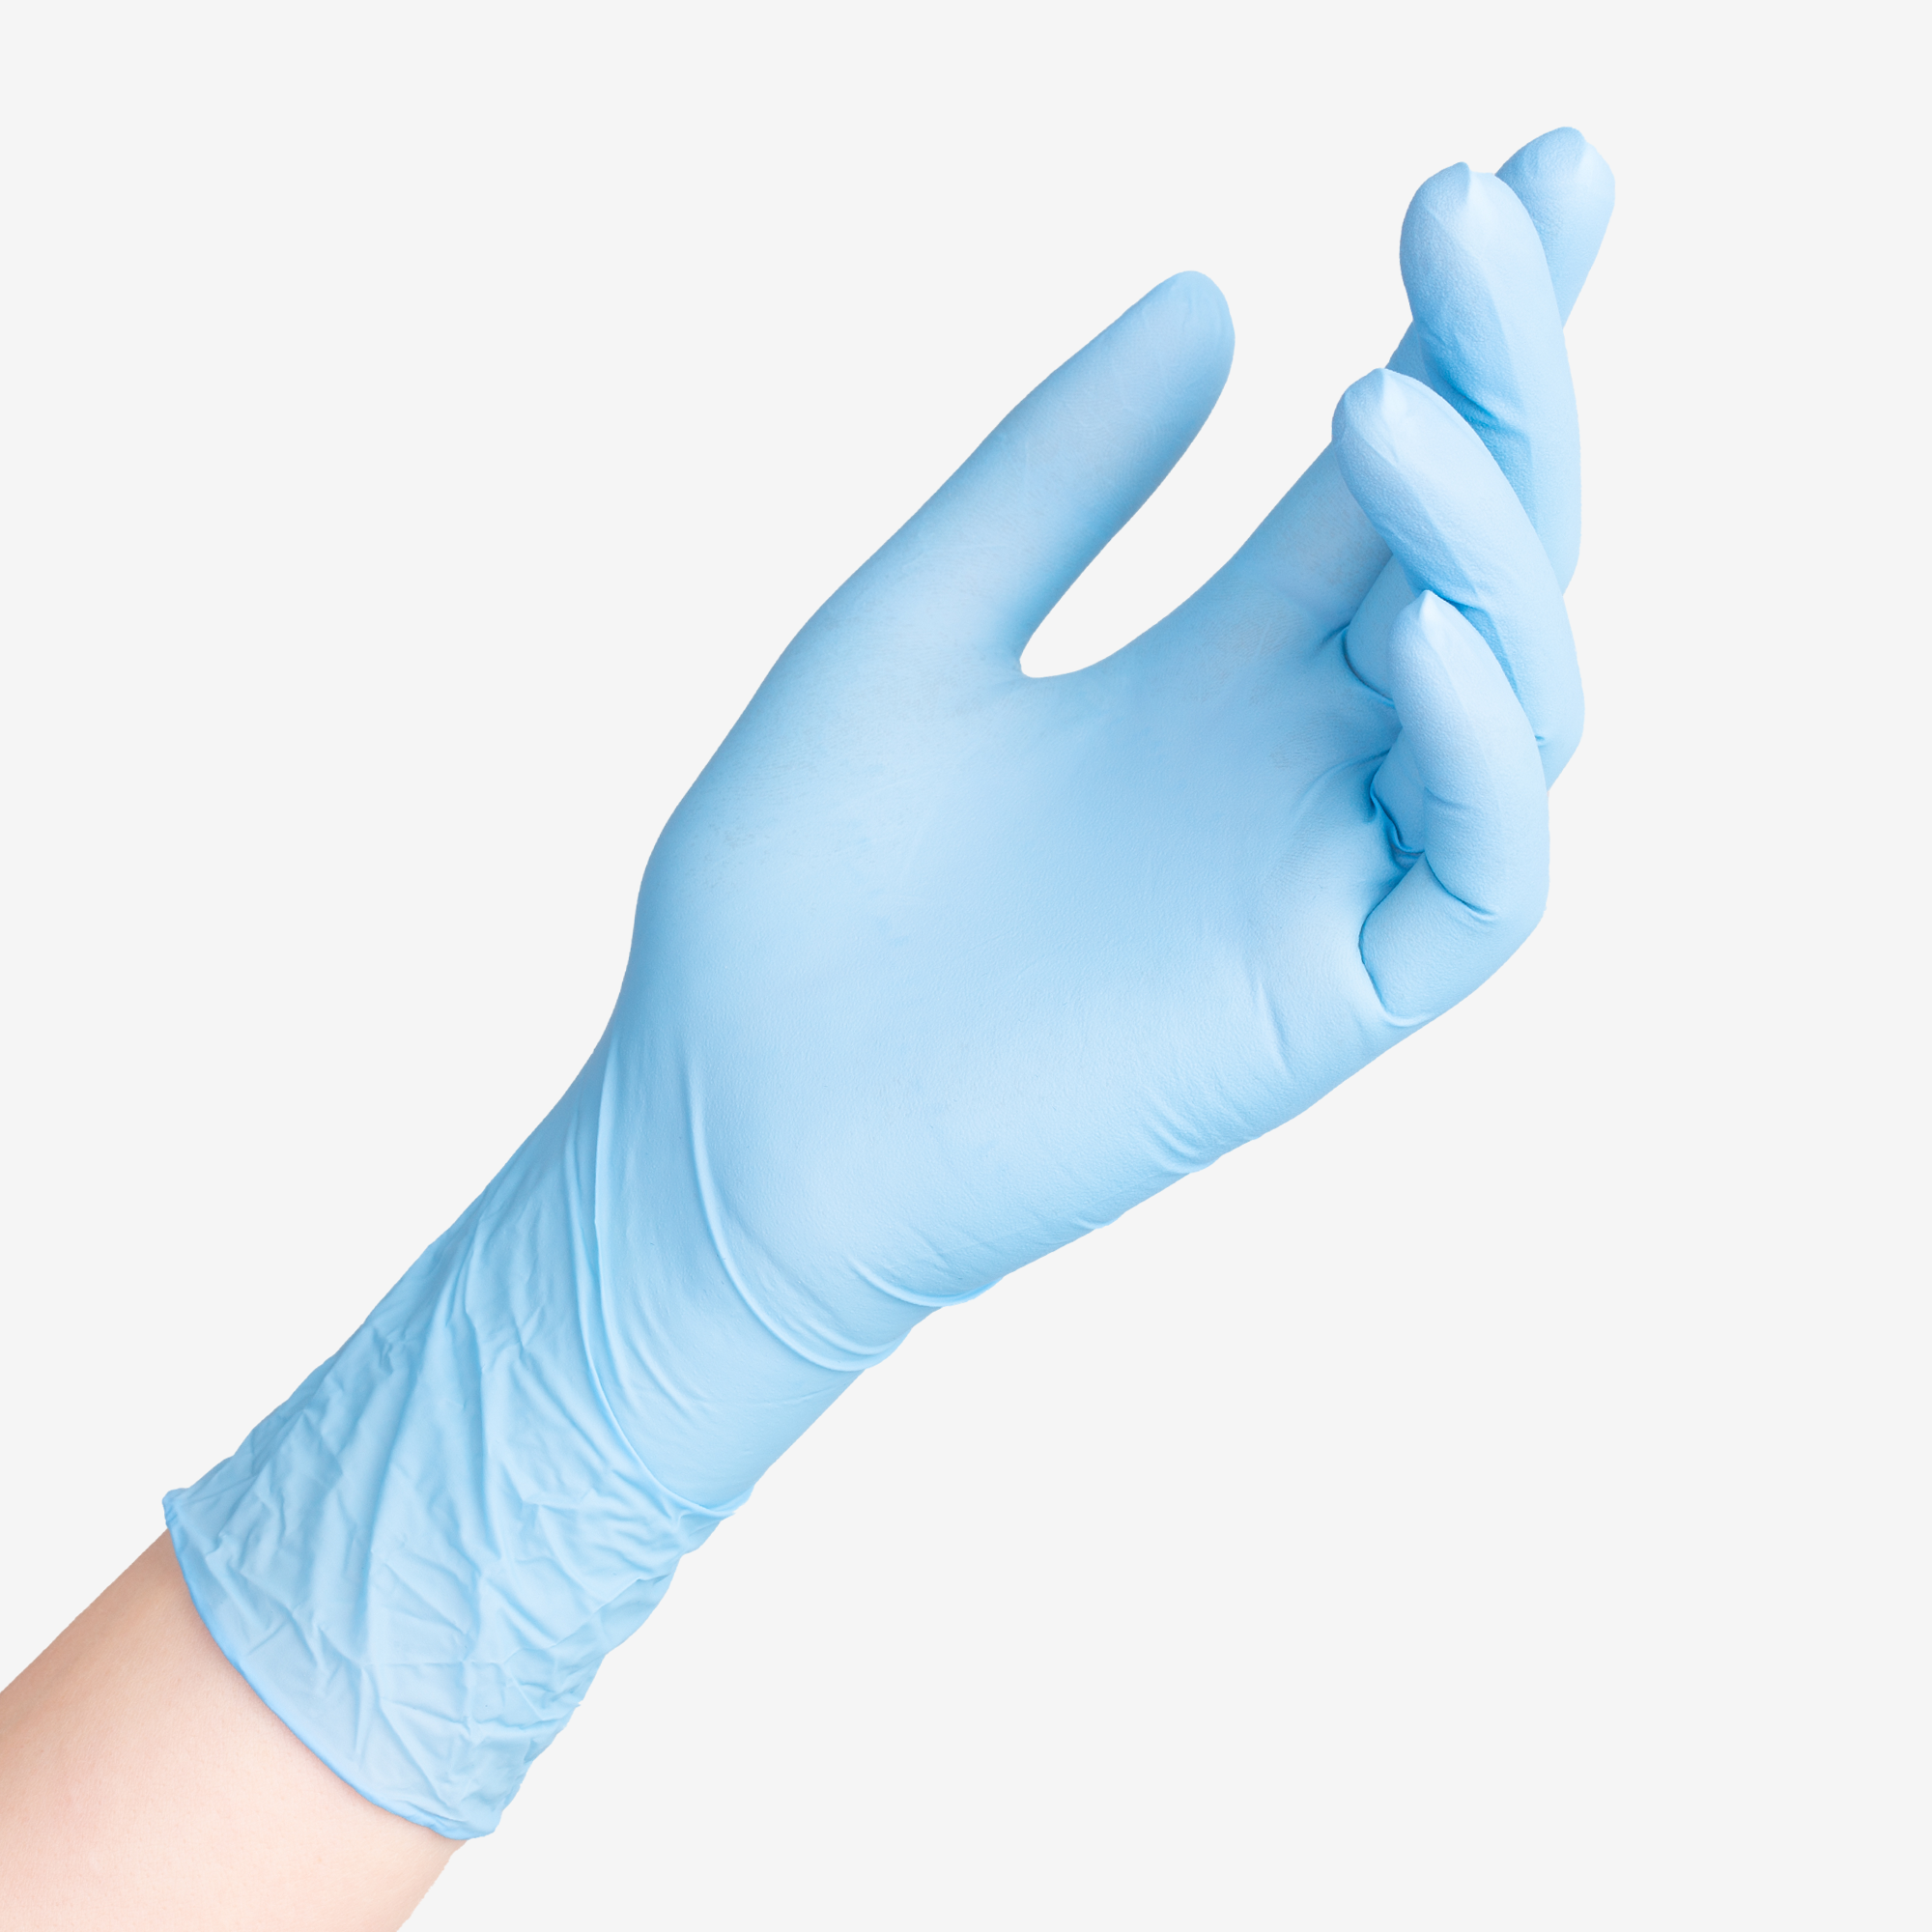 Нитриловые перчатки "Safe&Care" голубые, 3,5 гр, размер M, 200 шт. в упак.